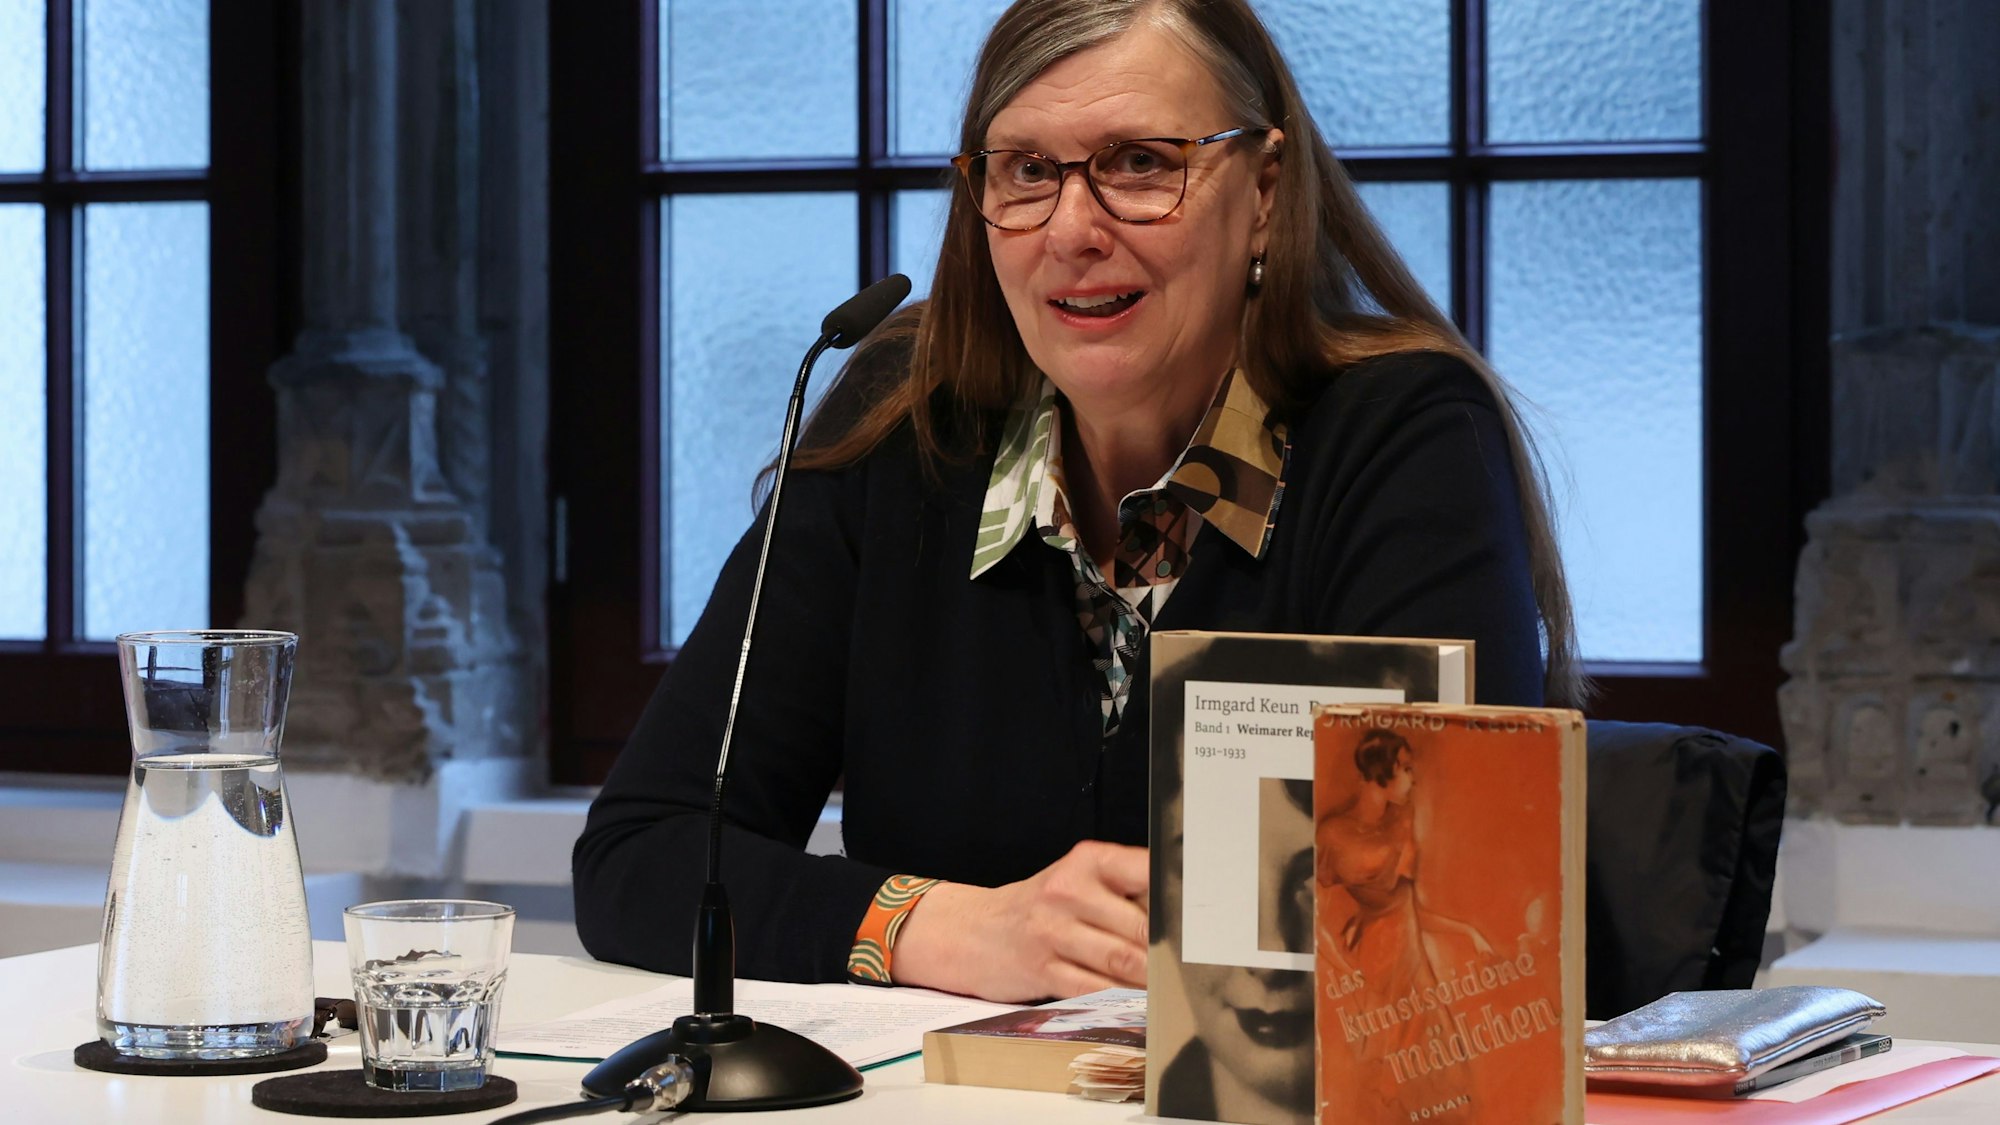 Professorin Annette Keck beim Irmgard-Keun-Abend im Literaturhaus.

